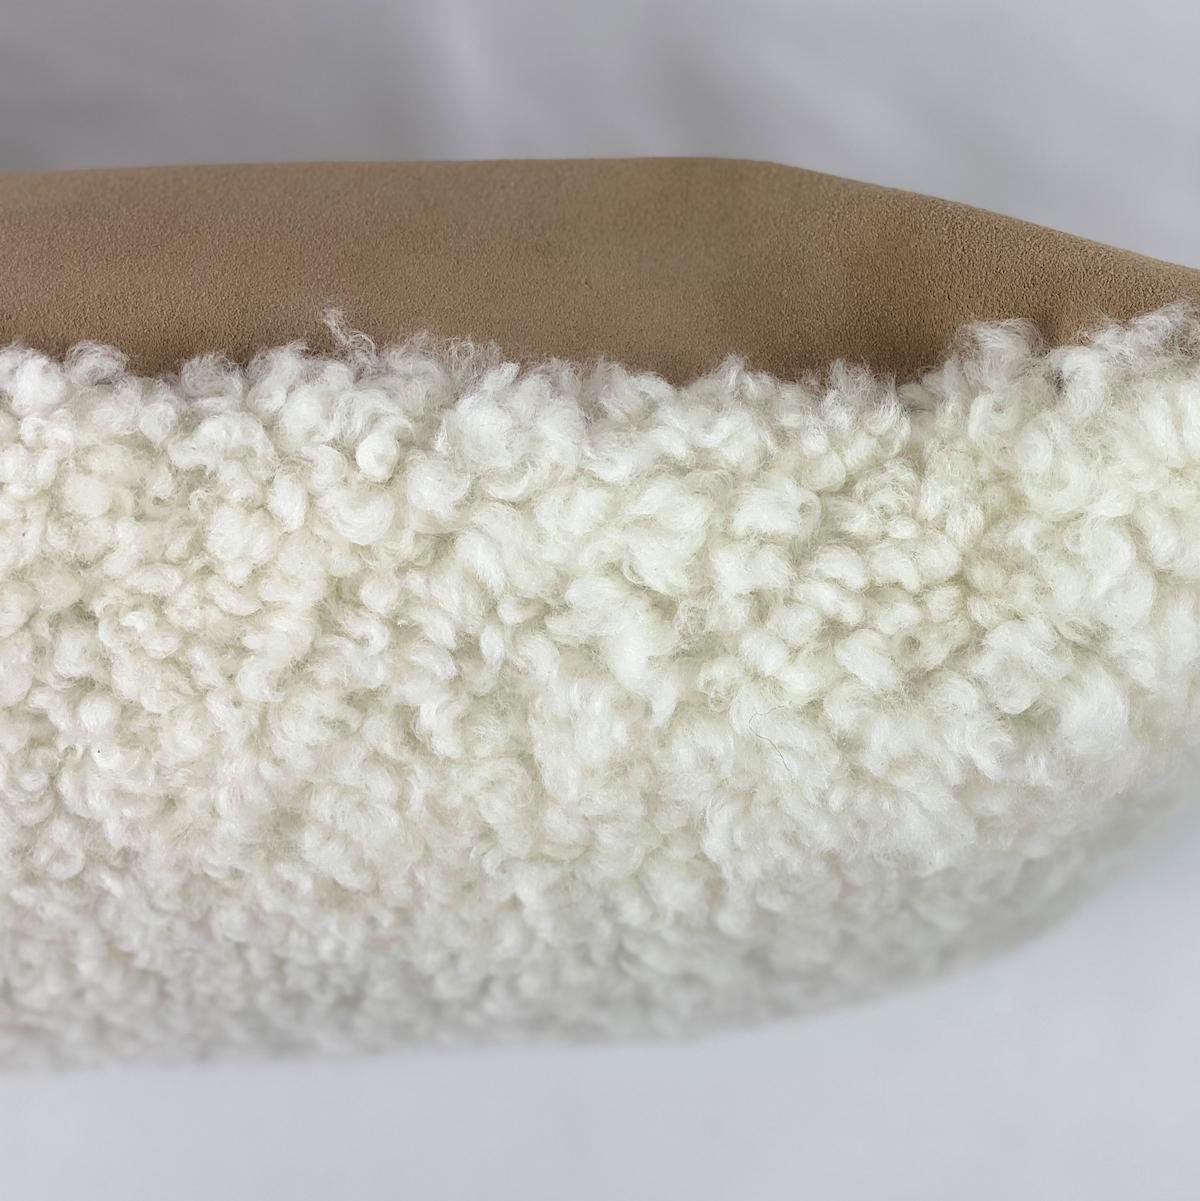 Australien Coussin blanc en peau de mouton, 50 x 50 cm  20x20